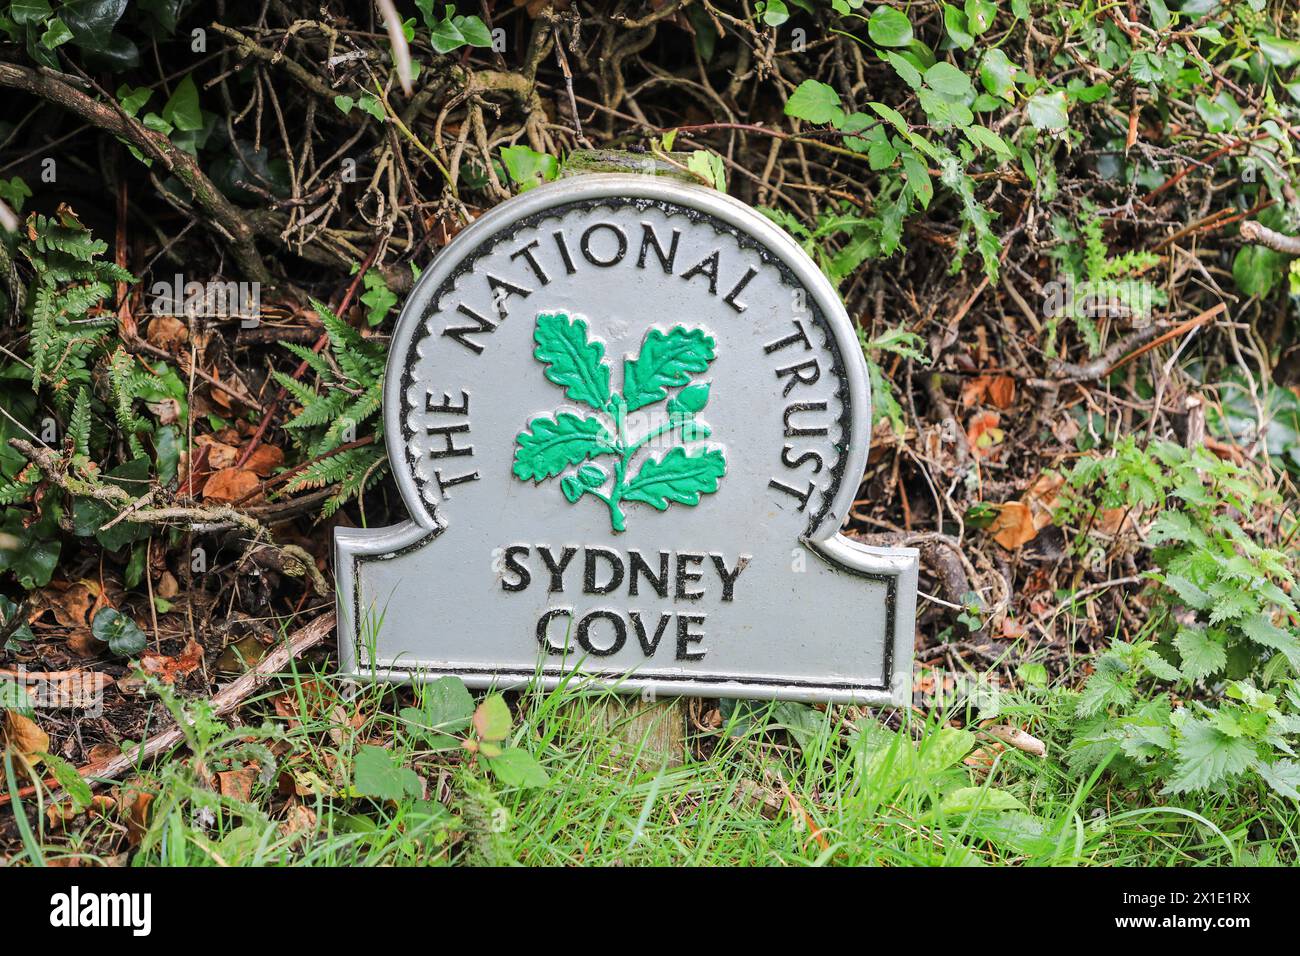 Ein Omega-Schild des National Trust in Sydney Cove, Praa Sands, Cornwall, West Country, England, FOTO AUS GROSSBRITANNIEN VOM ÖFFENTLICHEN FUSSWEG Stockfoto